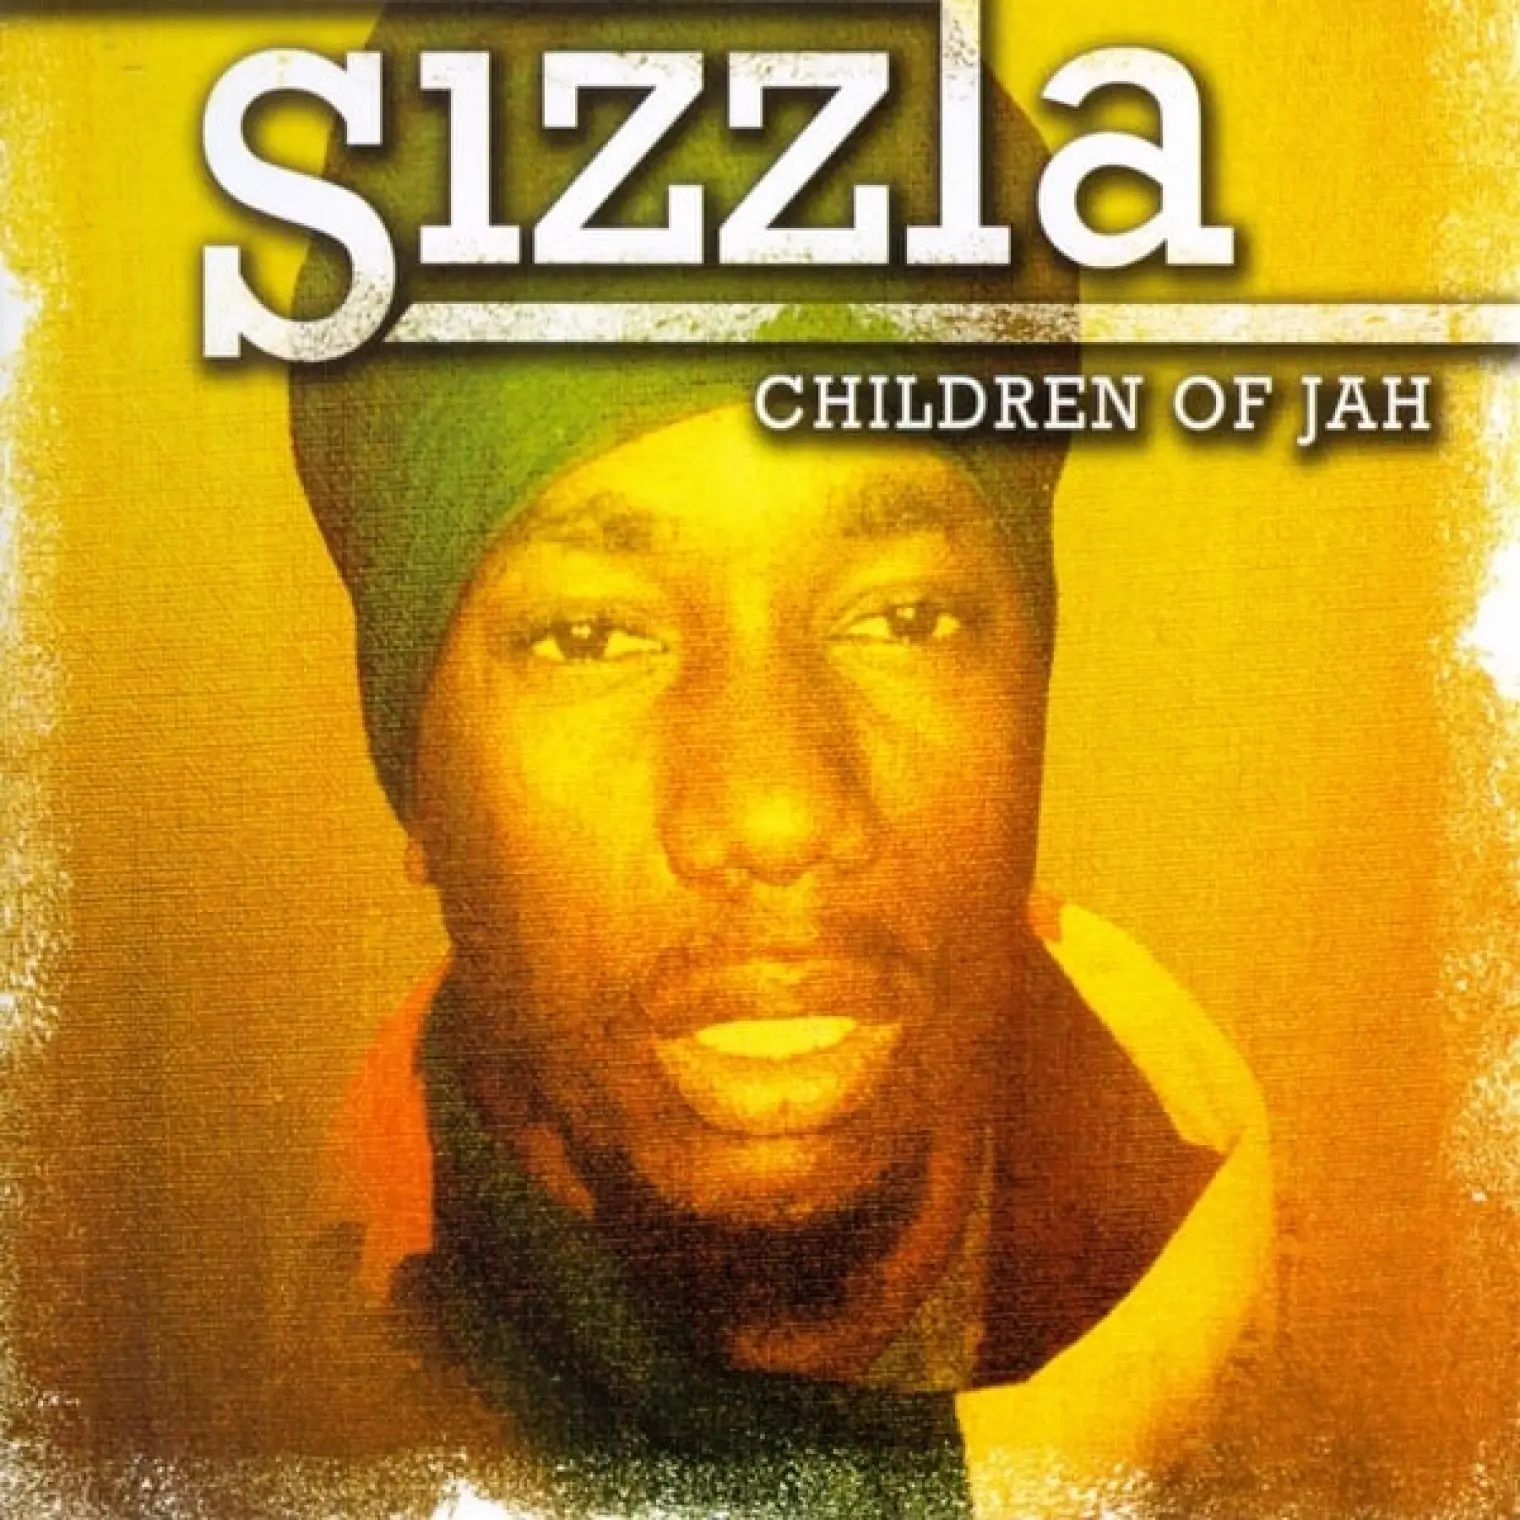 Children Of Jah -  Sizzla 